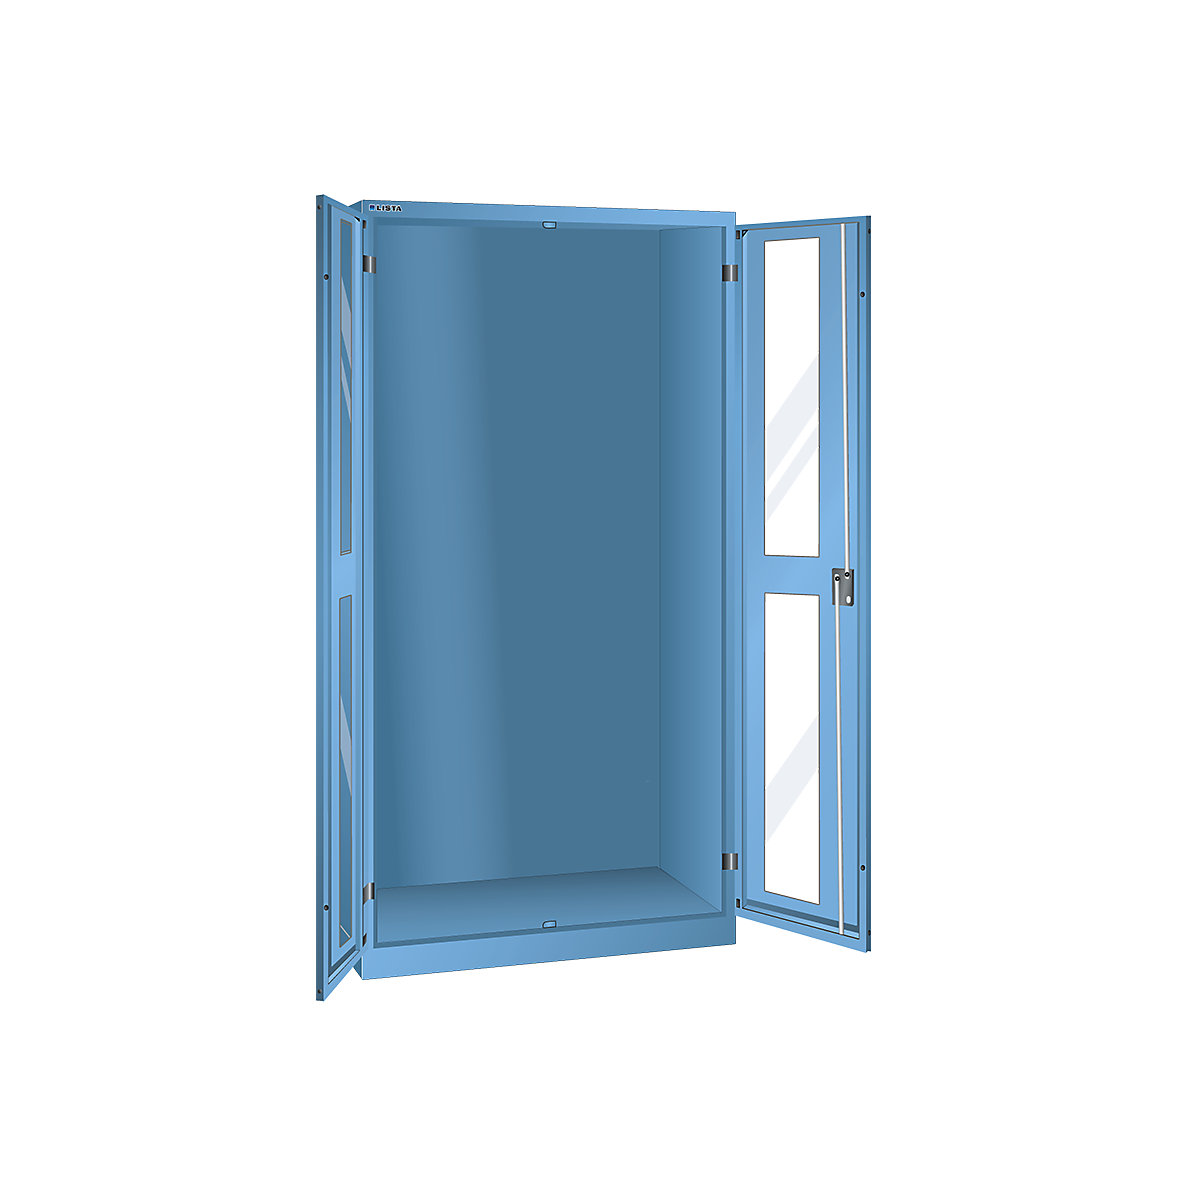 Szafa z okienkami, wys. x szer. x głęb. 1950 x 1000 x 580 mm – LISTA, pusta obudowa, jasnoniebieska-8